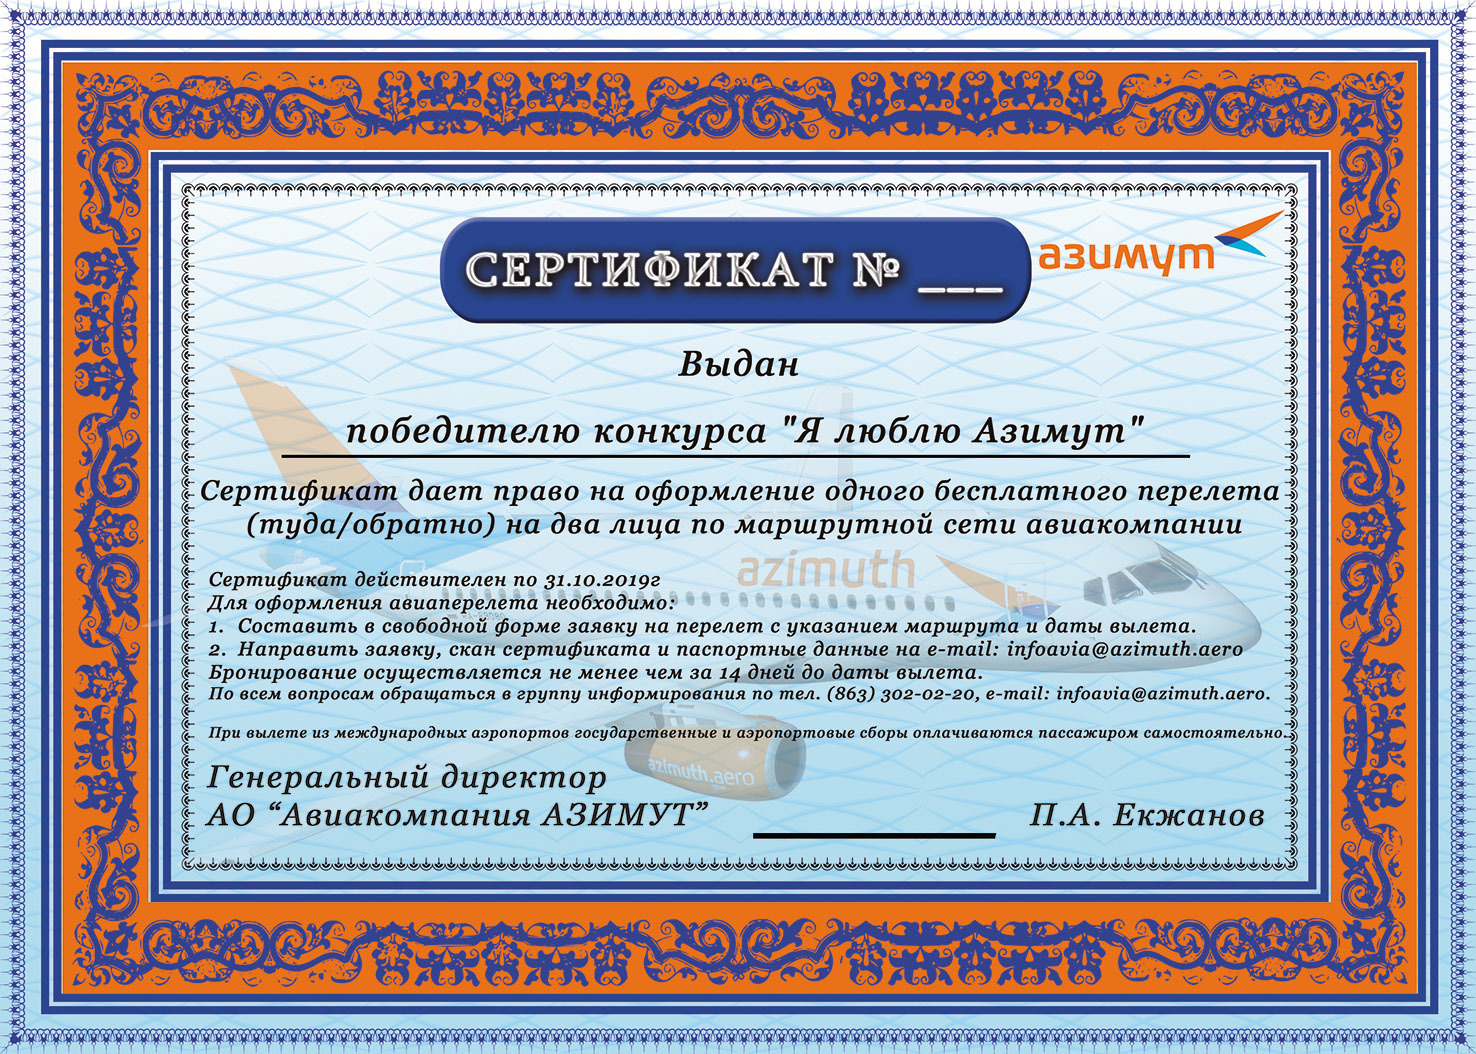 Сертификат предоставляется. Сертификат Азимут. Сертификат авиакомпании. Сертификат победителя конкурса. Подарочный сертификат авиакомпании.